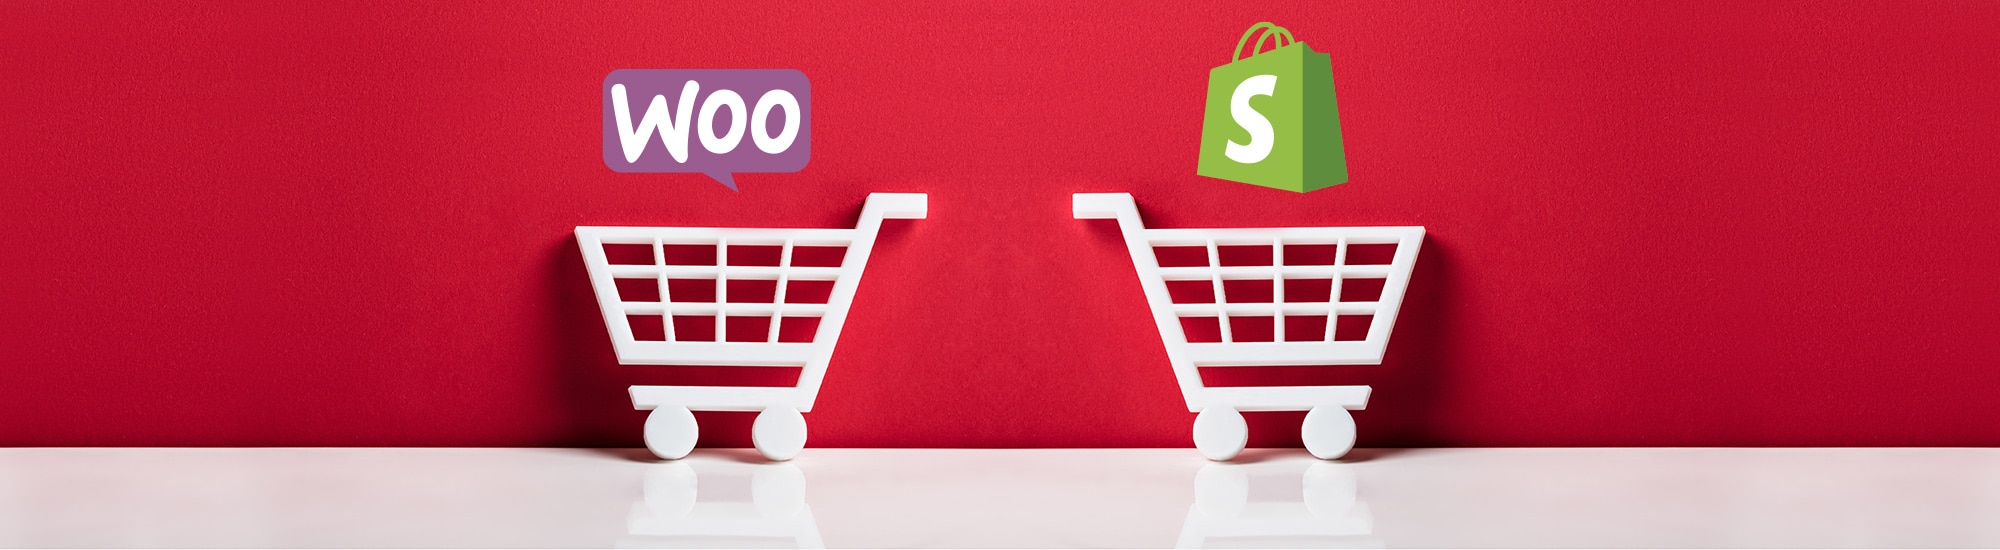 WooCommerce vs Shopify : quelle est la meilleure plateforme de commerce électronique ?